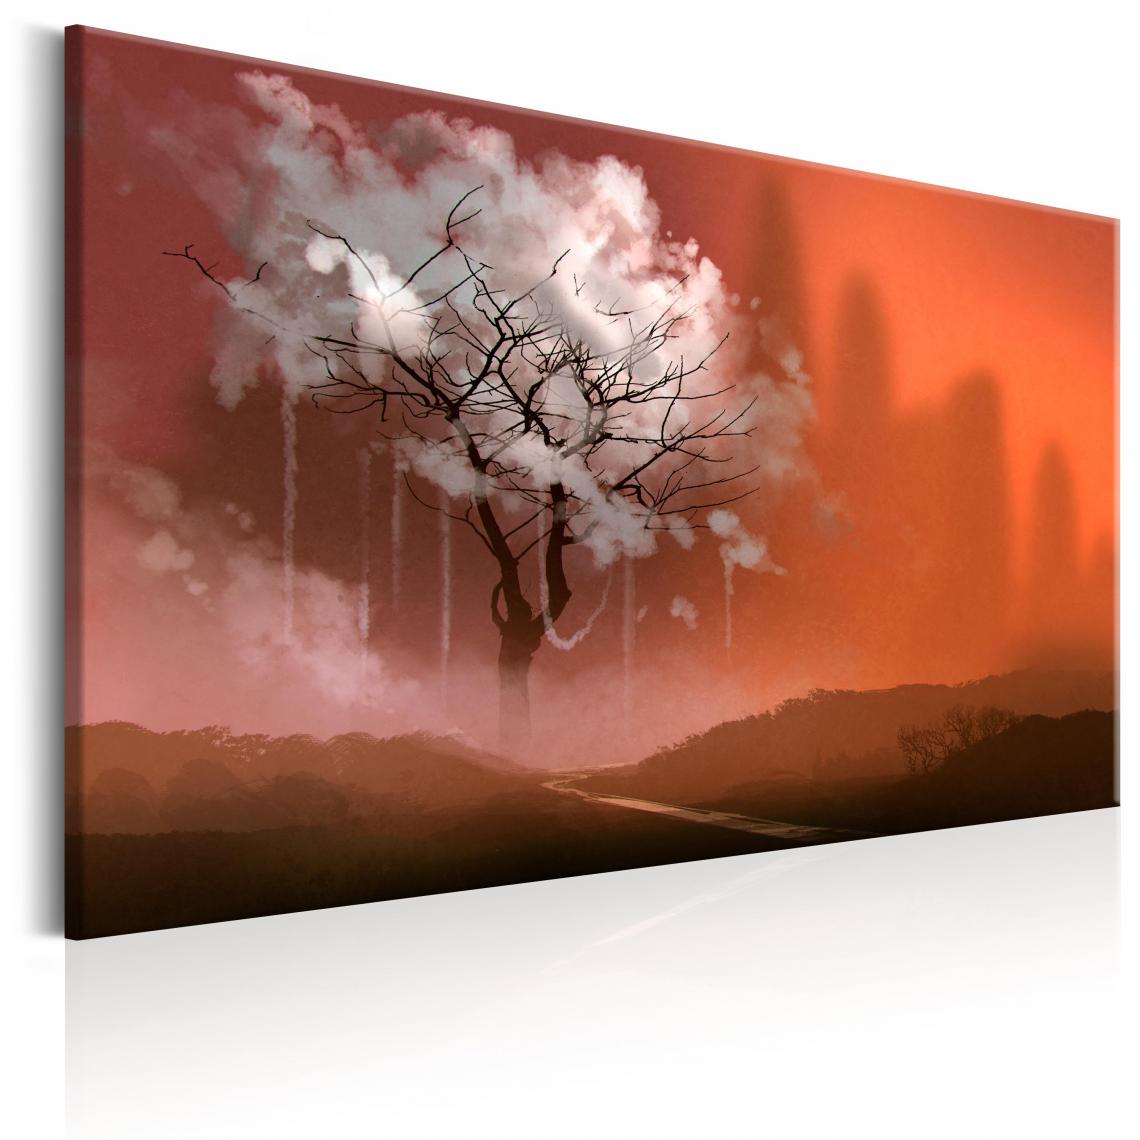 Decoshop26 - Tableau sur toile décoration murale image imprimée cadre en bois à suspendre Pays des rêves 90x60 cm 11_0005959 - Tableaux, peintures